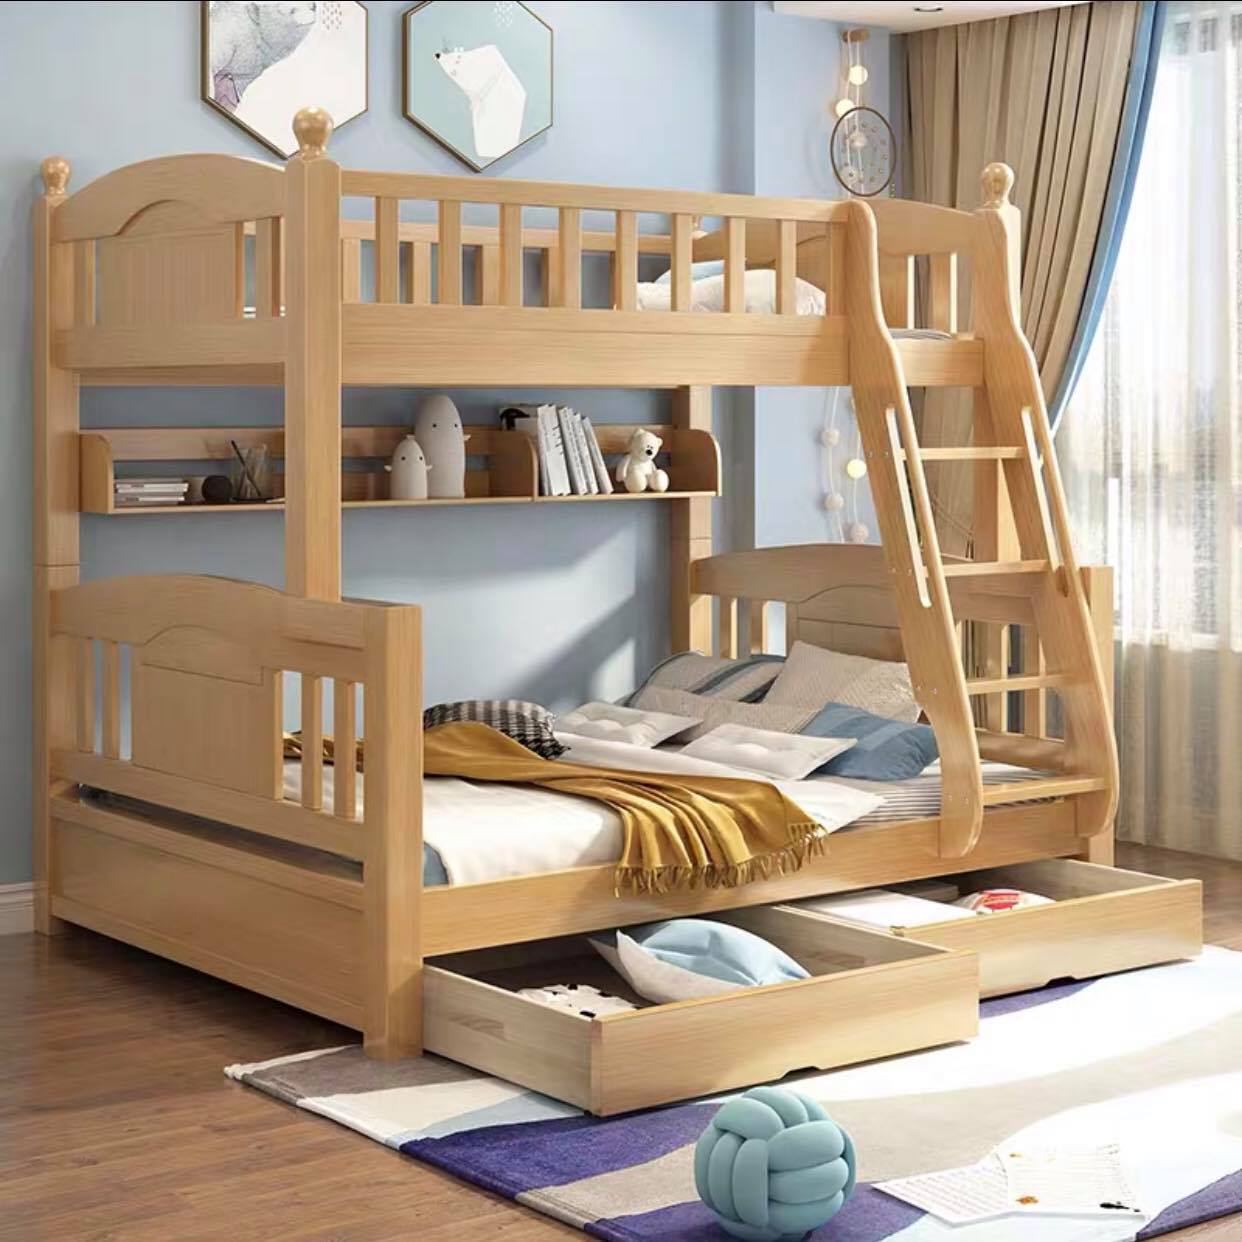 Mẫu giường gỗ cho bé trai với thiết kế đơn giản bằng gỗ tự nhiên